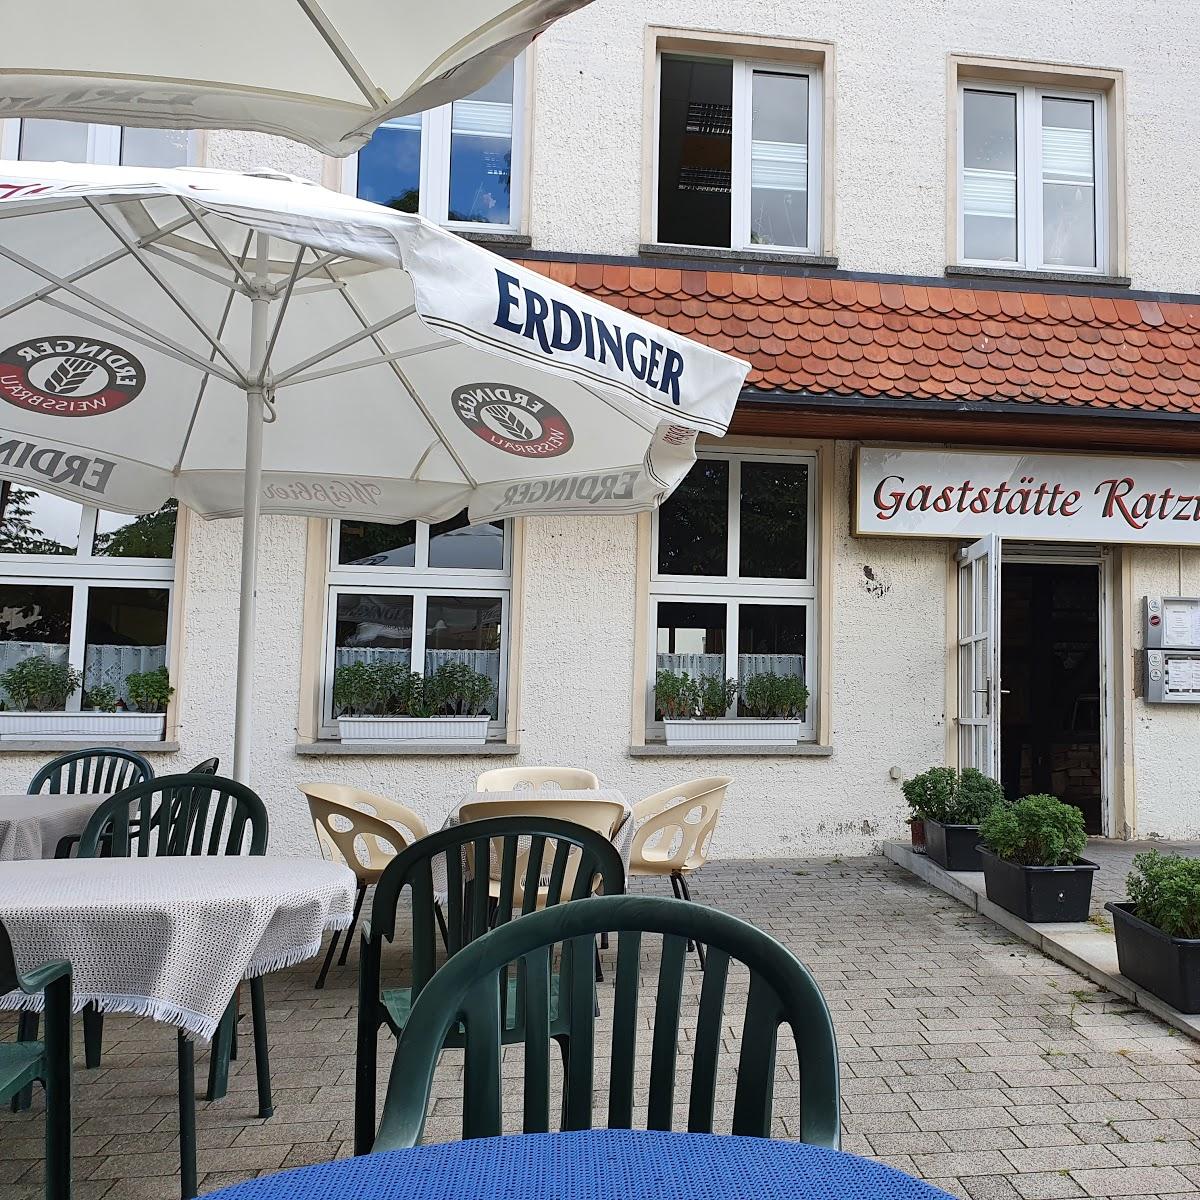 Restaurant "Gaststätte Ratzi" in Pasewalk